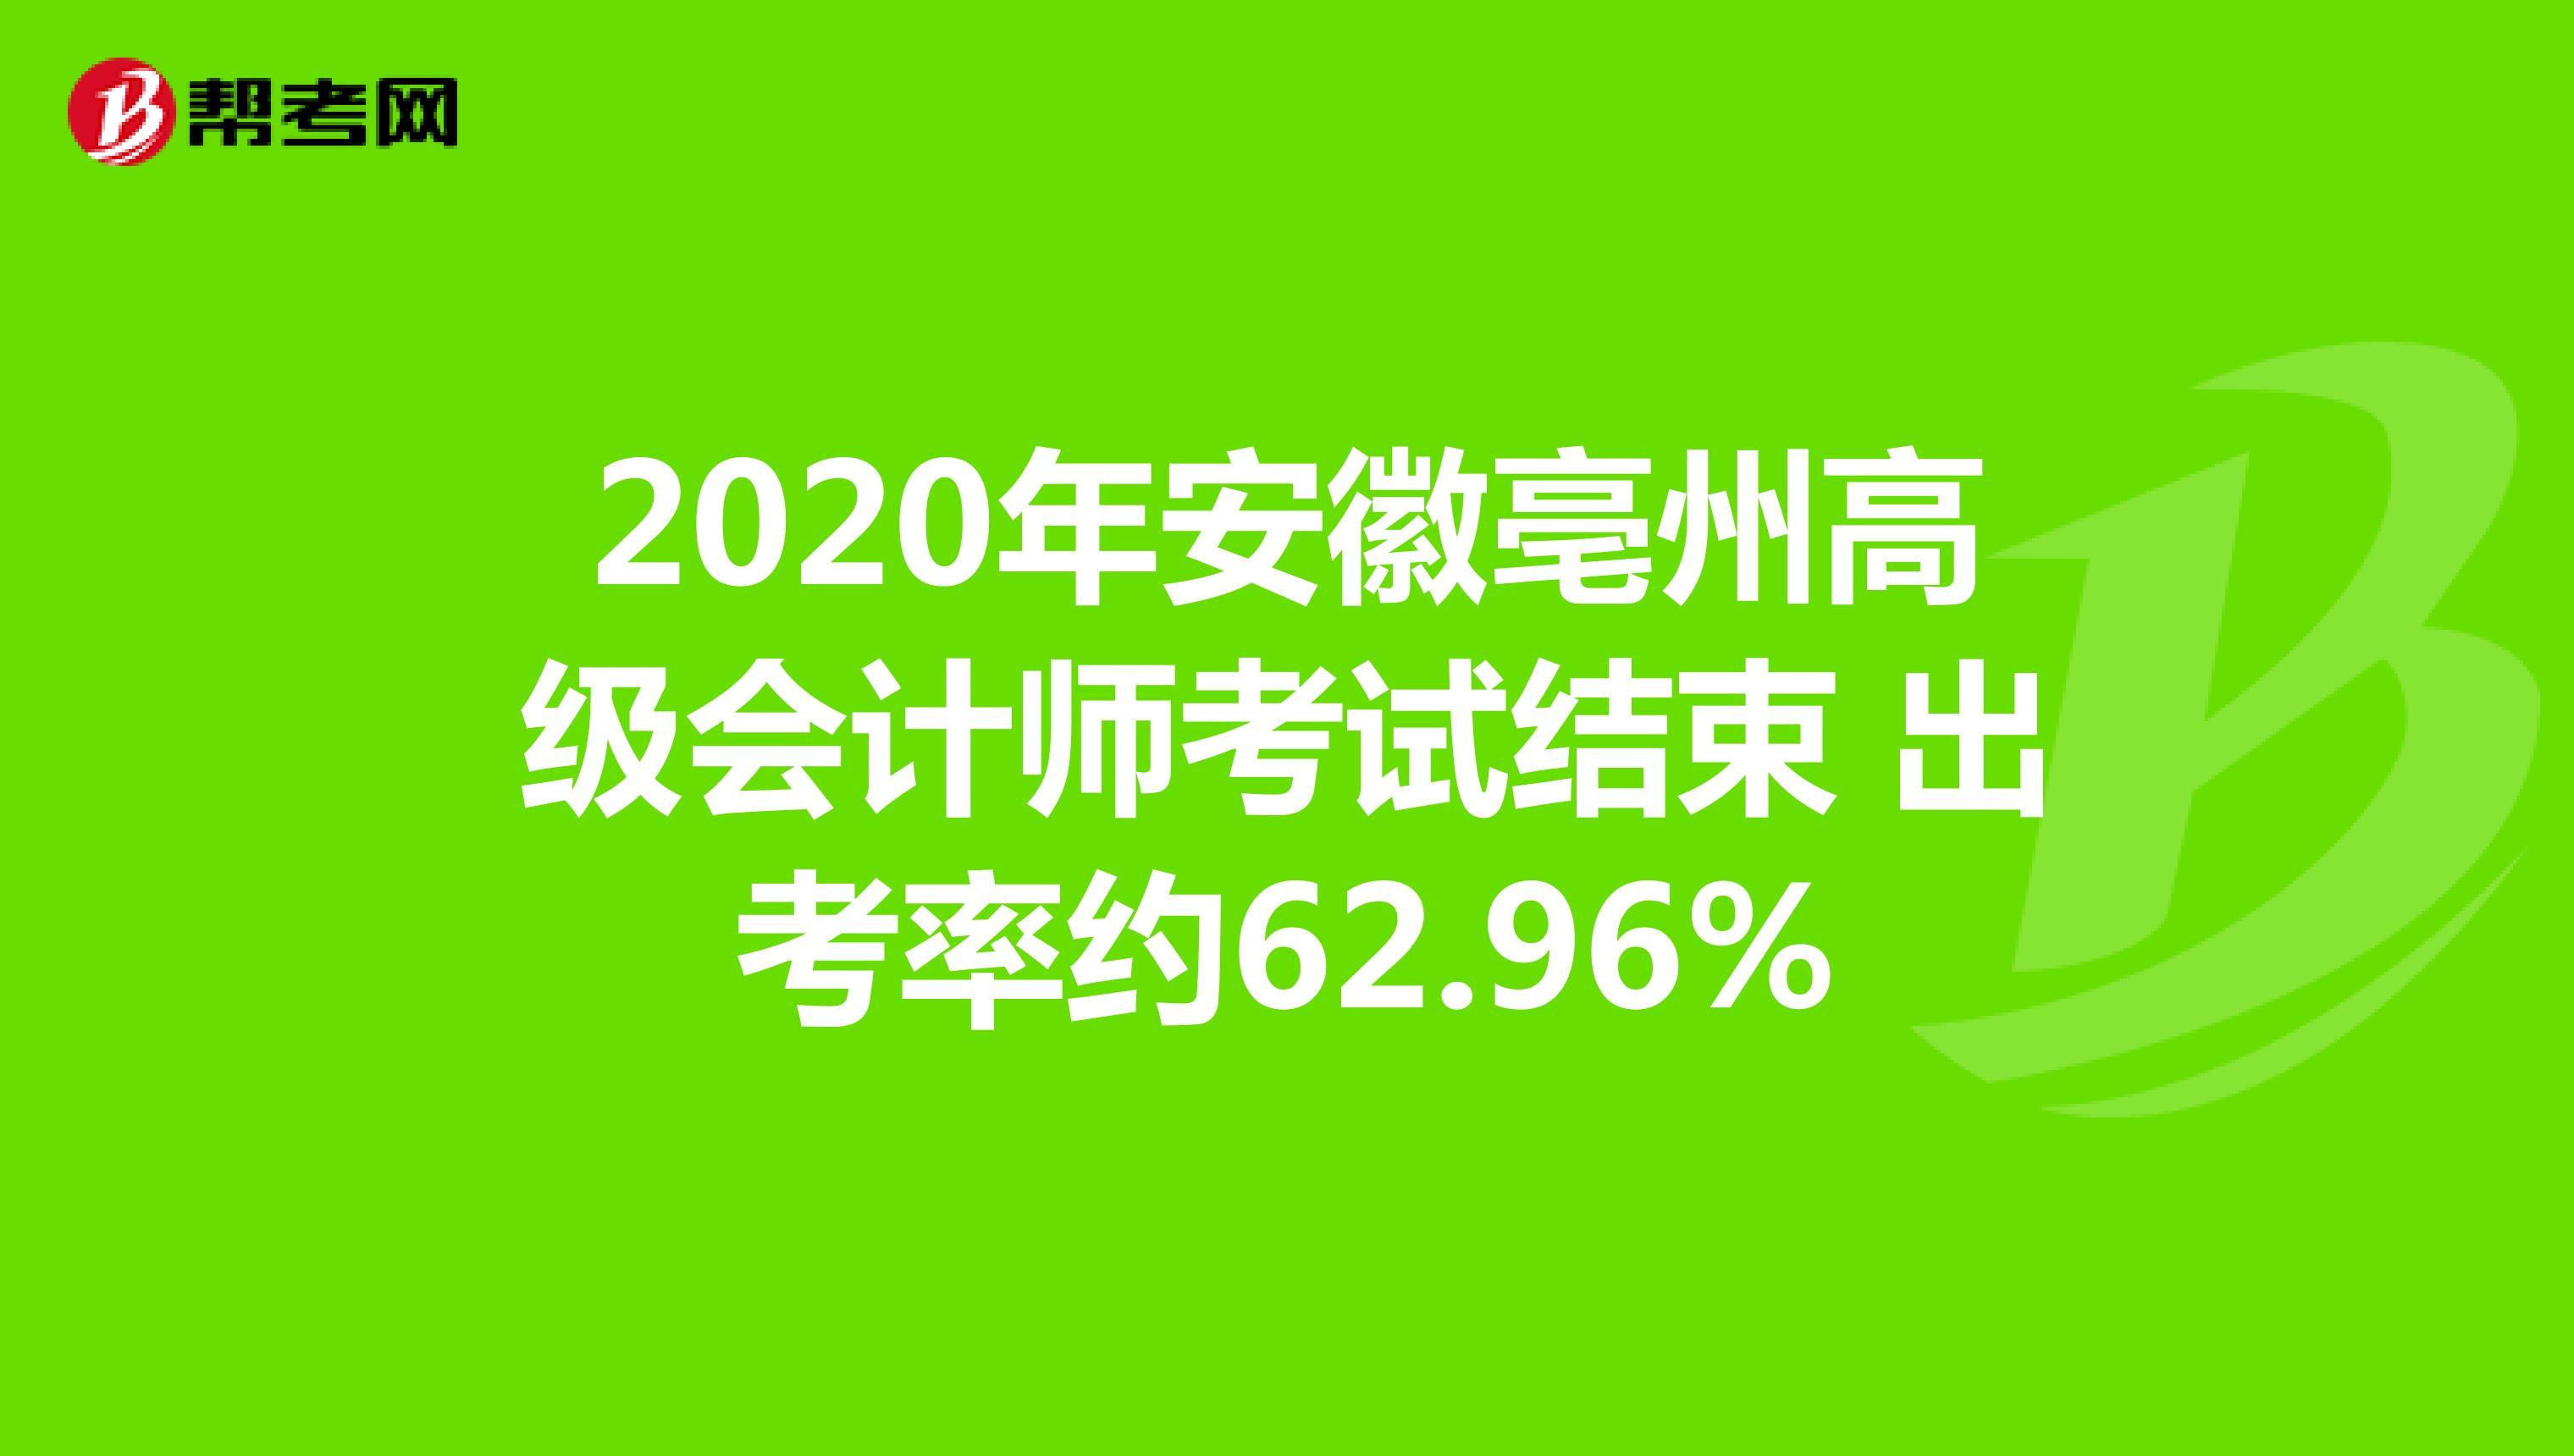 2020年安徽亳州高级会计师考试结束 出考率约62.96%